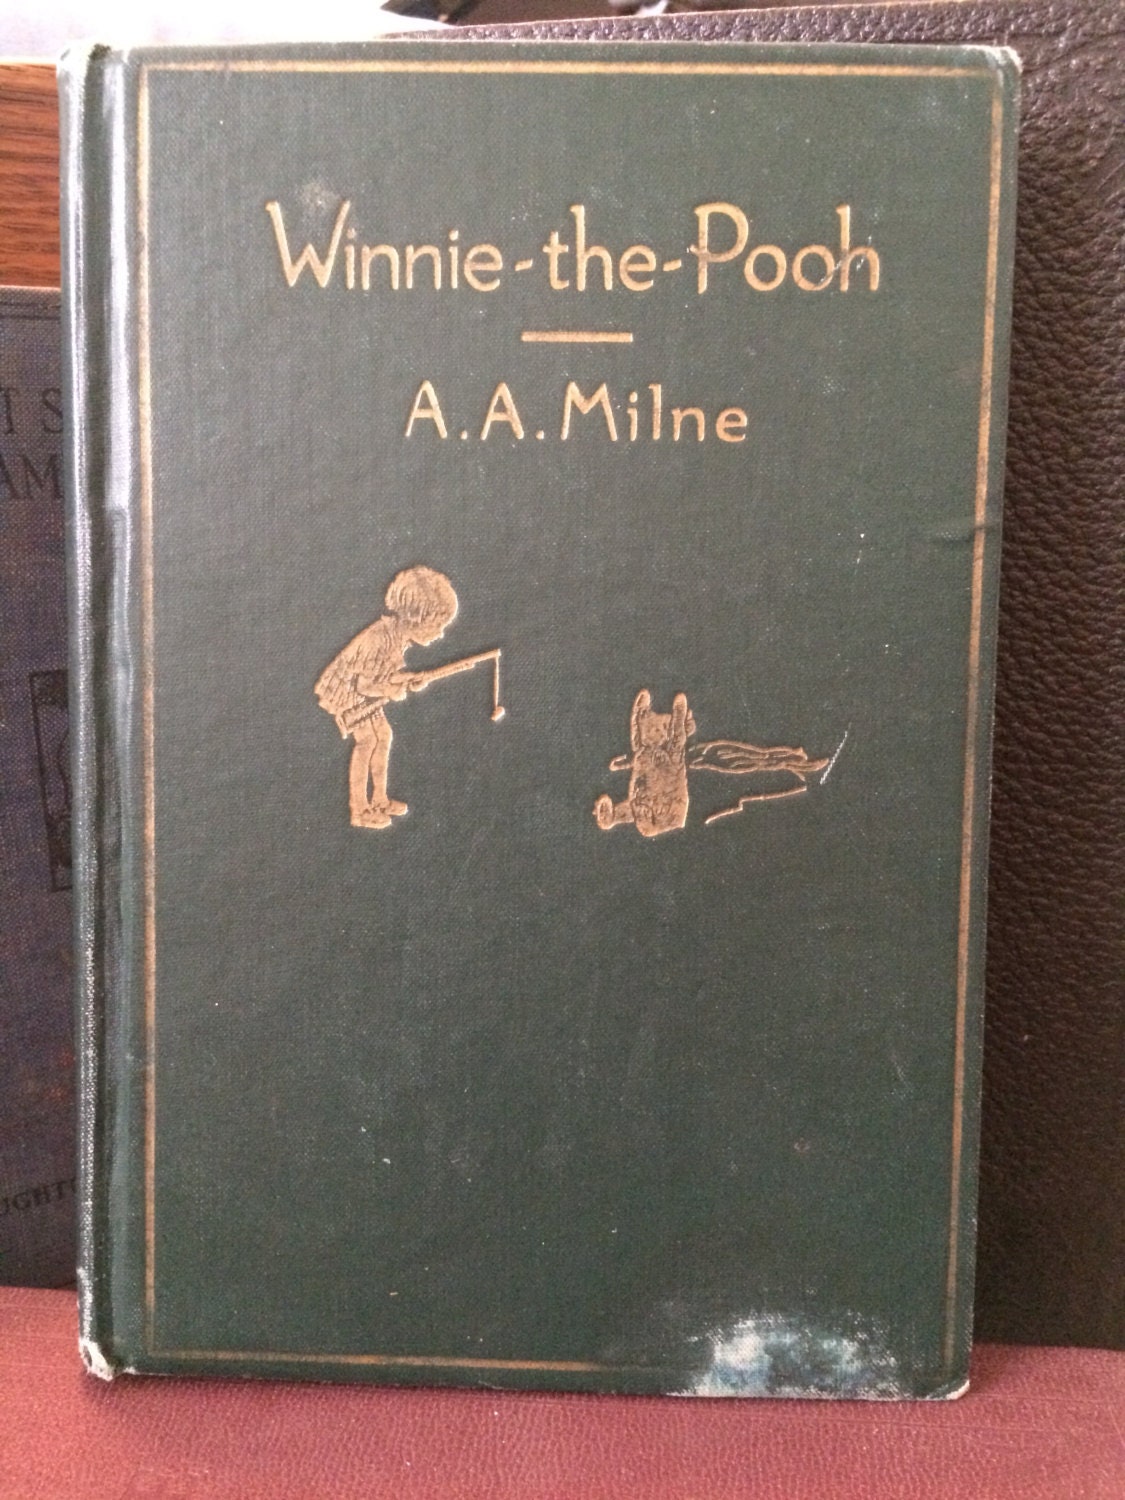 winnie the pooh classic book